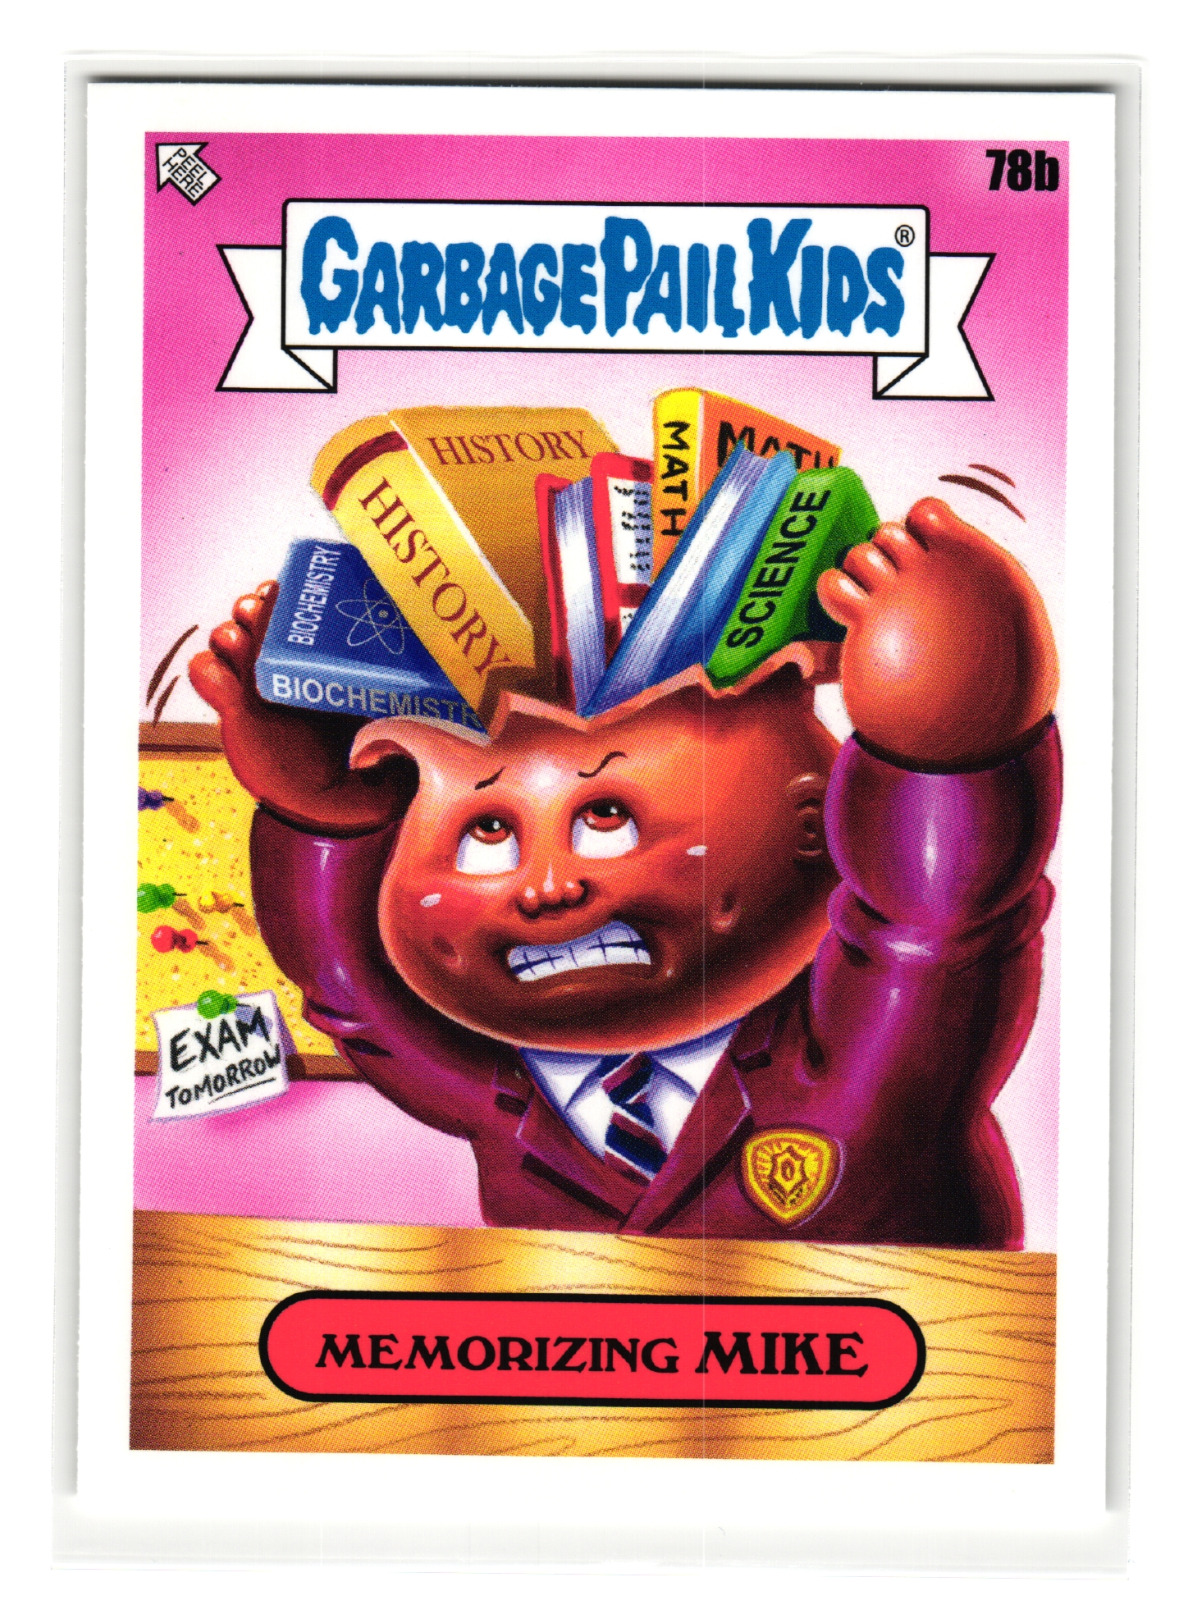 Memorizing Mike 2020 Topps Garbage Pail Kids Series 1 Parody Sticker Card 78b